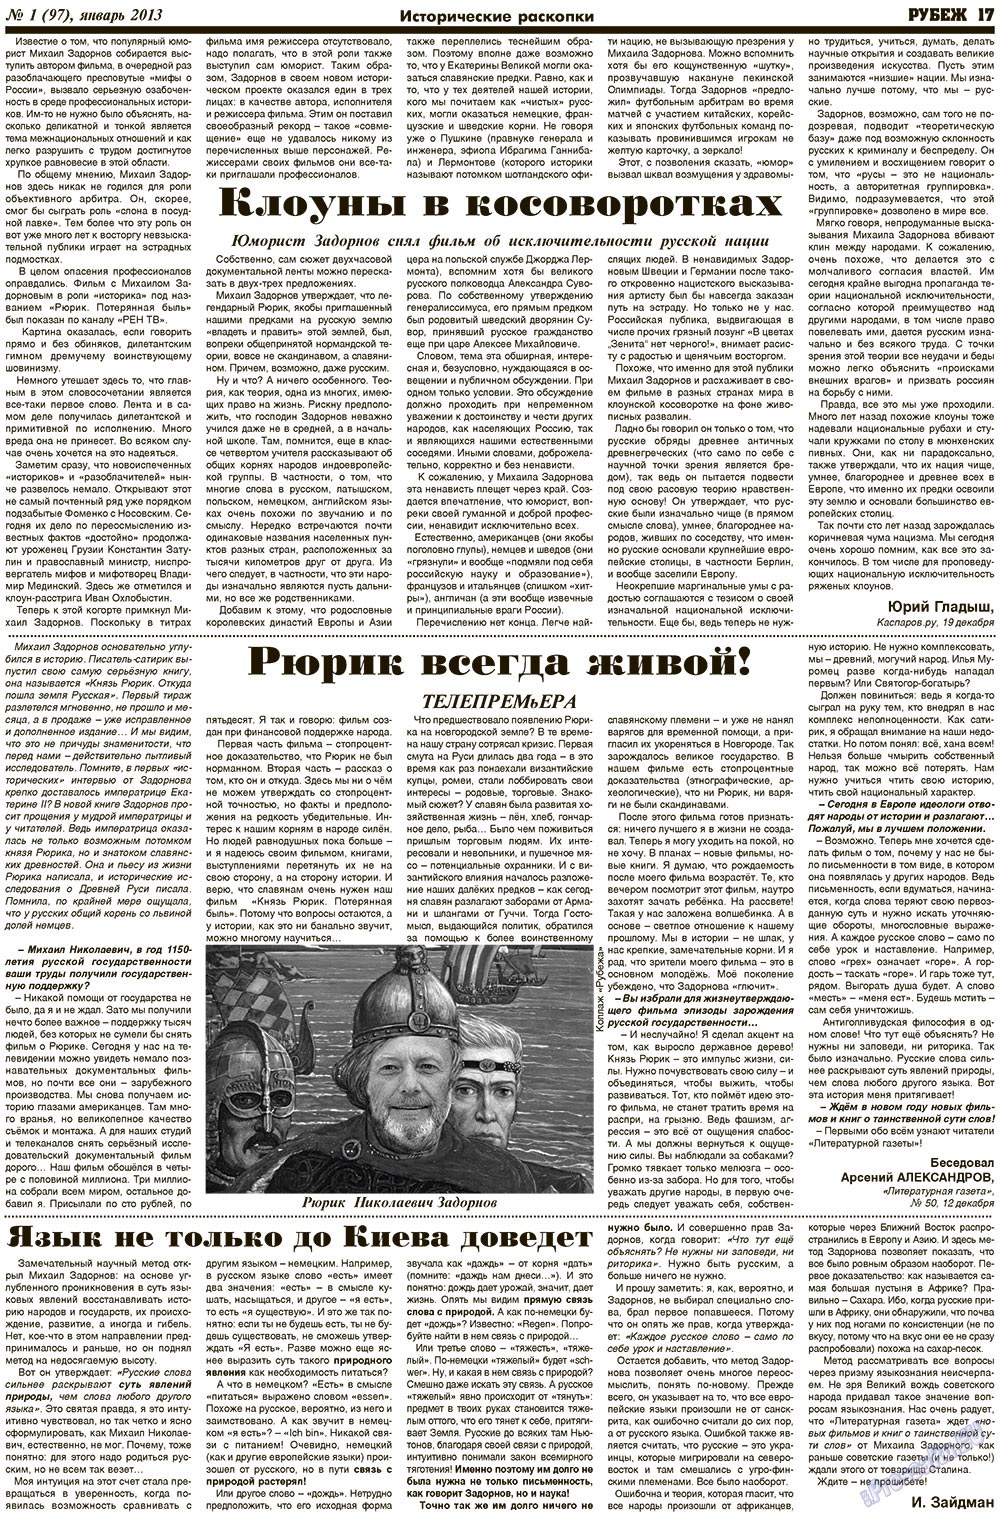 Рубеж (газета). 2013 год, номер 1, стр. 17